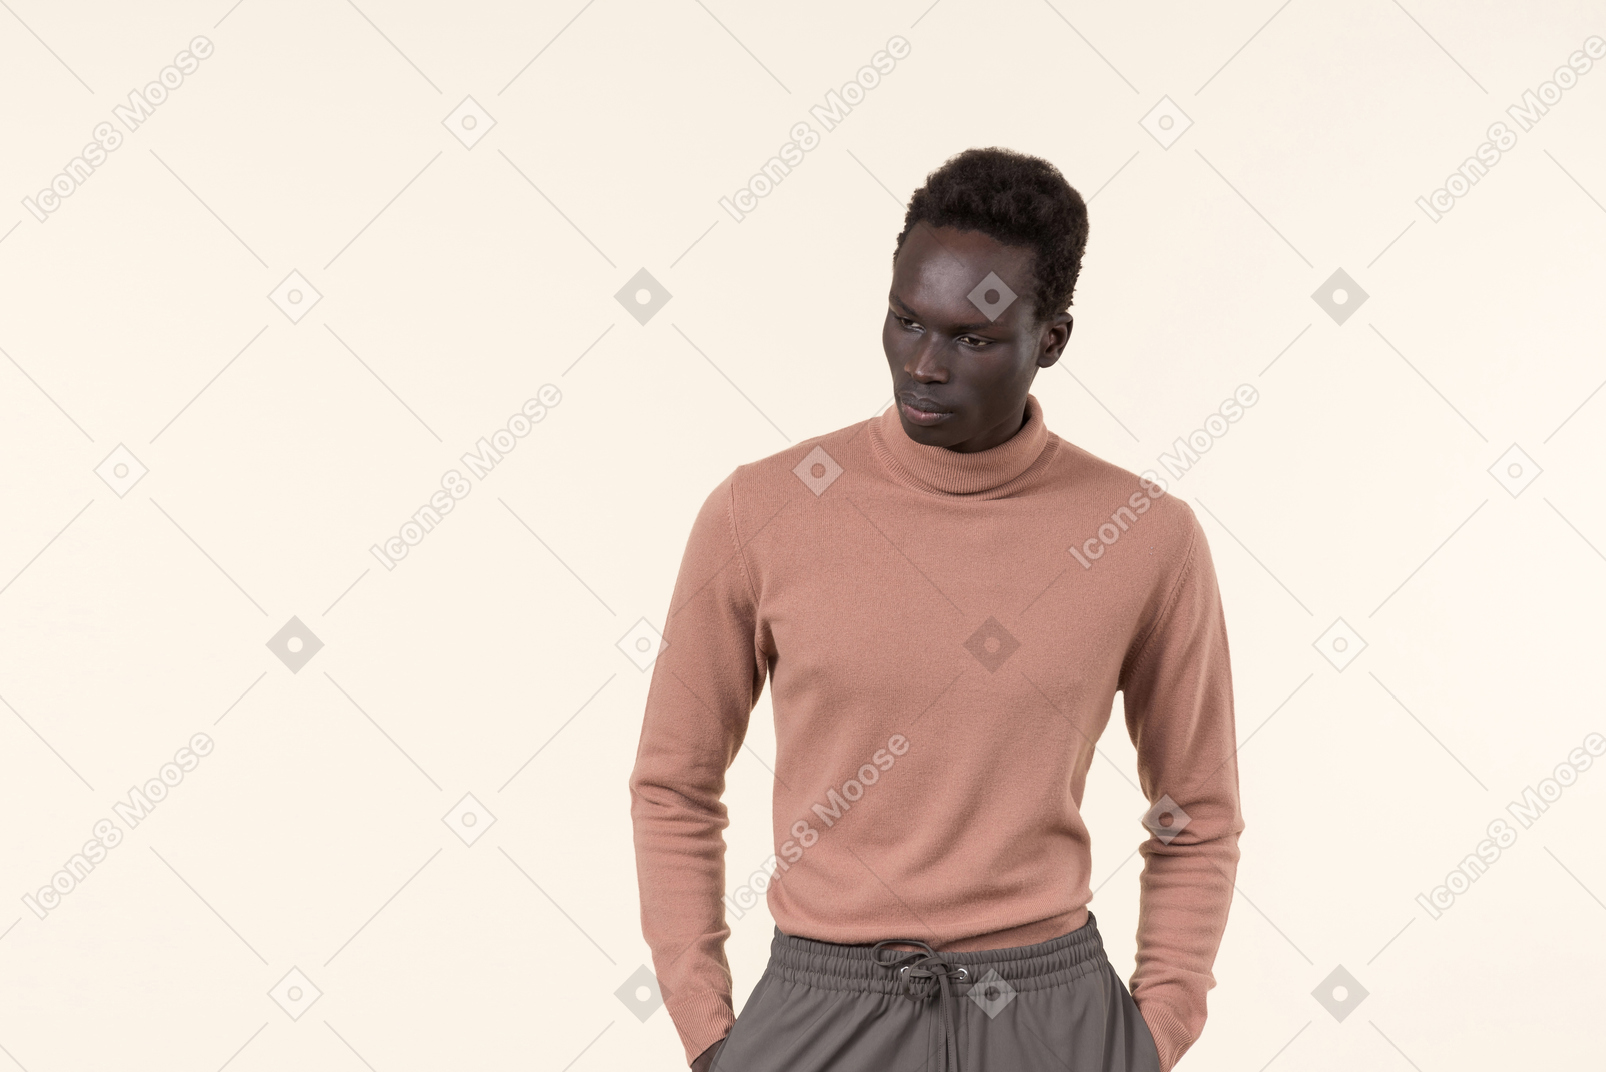 Ein junger schwarzer mann in einem beigen rollkragenpullover und einer grauen jogginghose, die lässig auf dem weißen hintergrund stehen